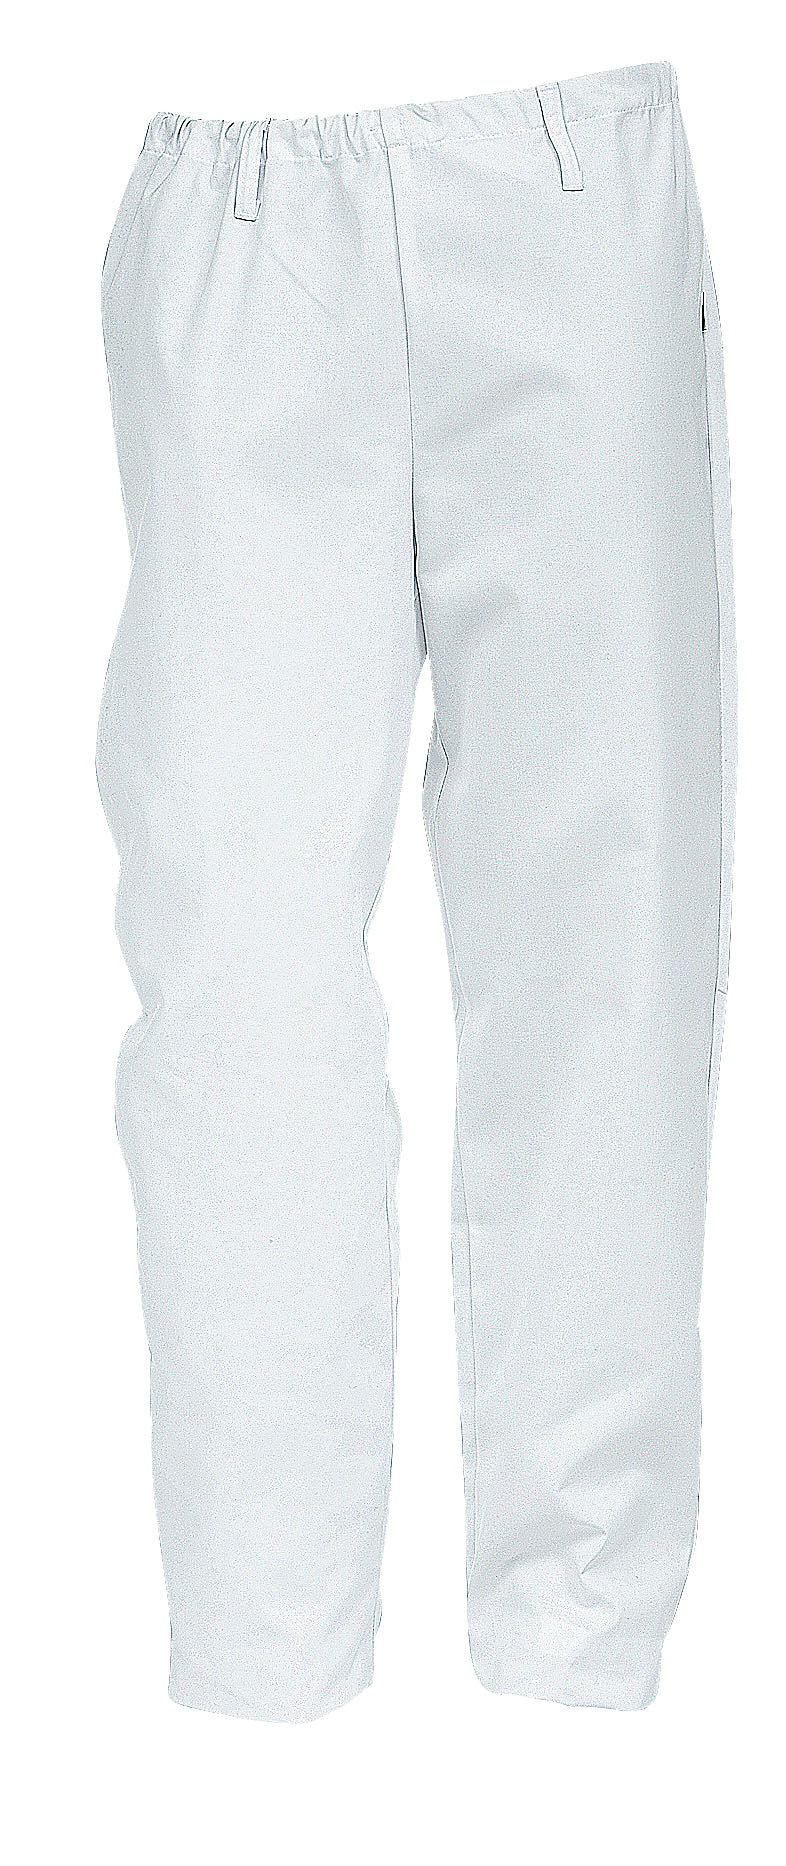 Valkoiset pitkälahkeiset suorat housut naisten mitoituksella. Kuminauhavyötärö ja vyönlenkit.